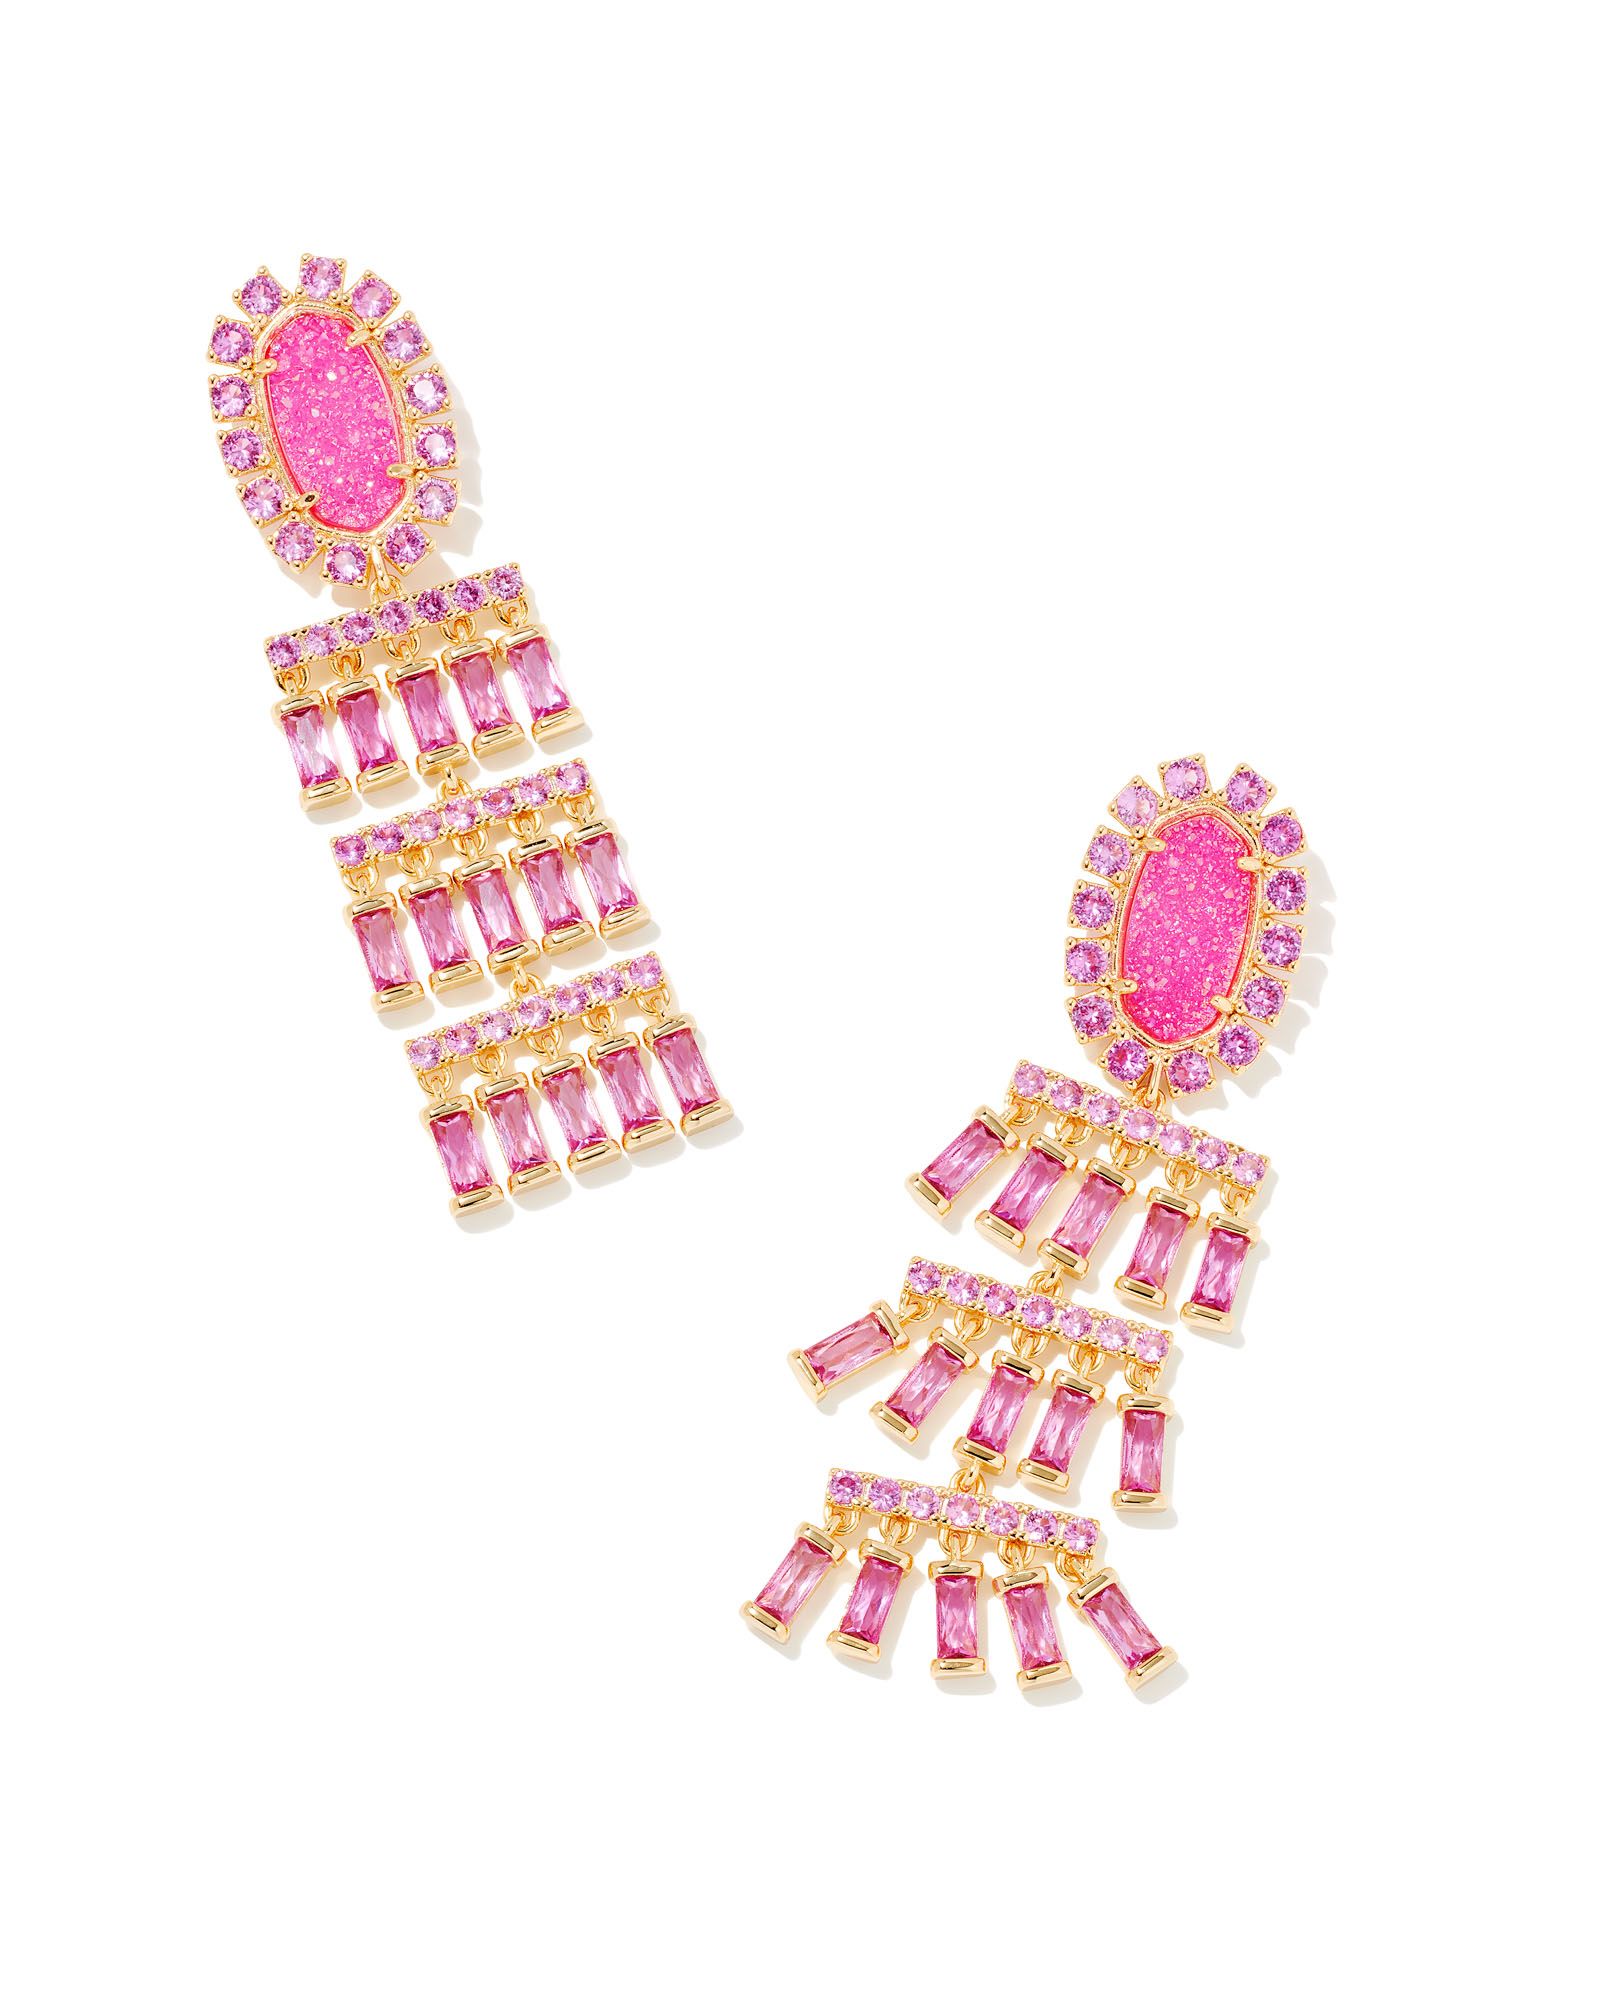 Barbie™ x Kendra Scott Gold Statement Earrings in Hot Pink Drusy | Kendra Scott | Kendra Scott